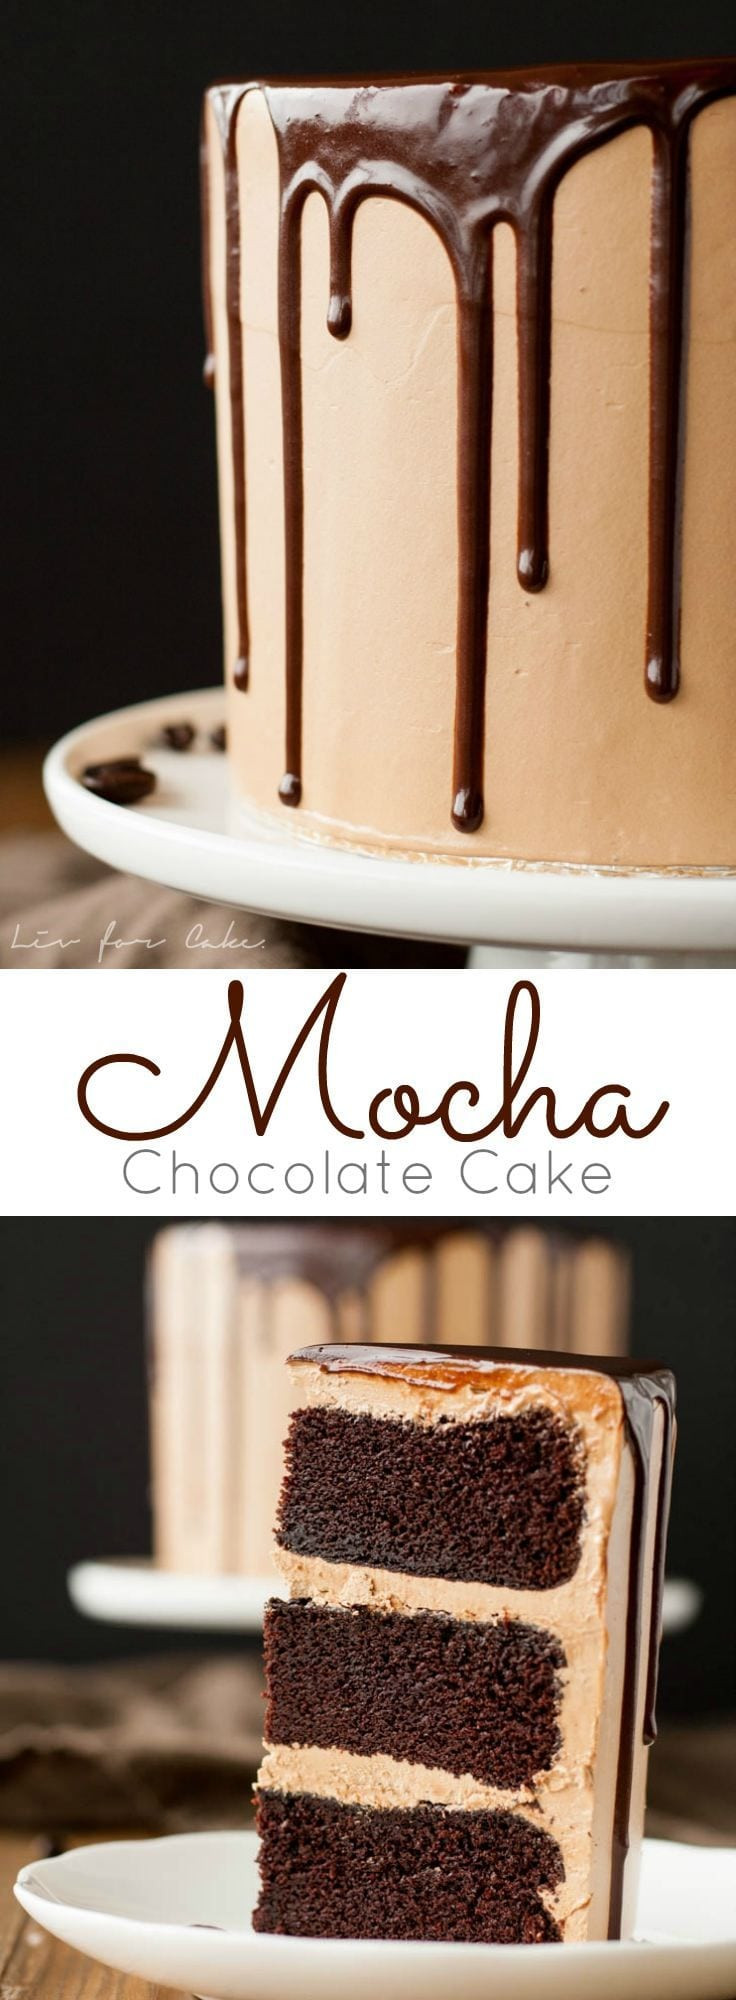 Chocolate Mocha Cake
 Chocolate Mocha Cake Archives Invitation Templates Design